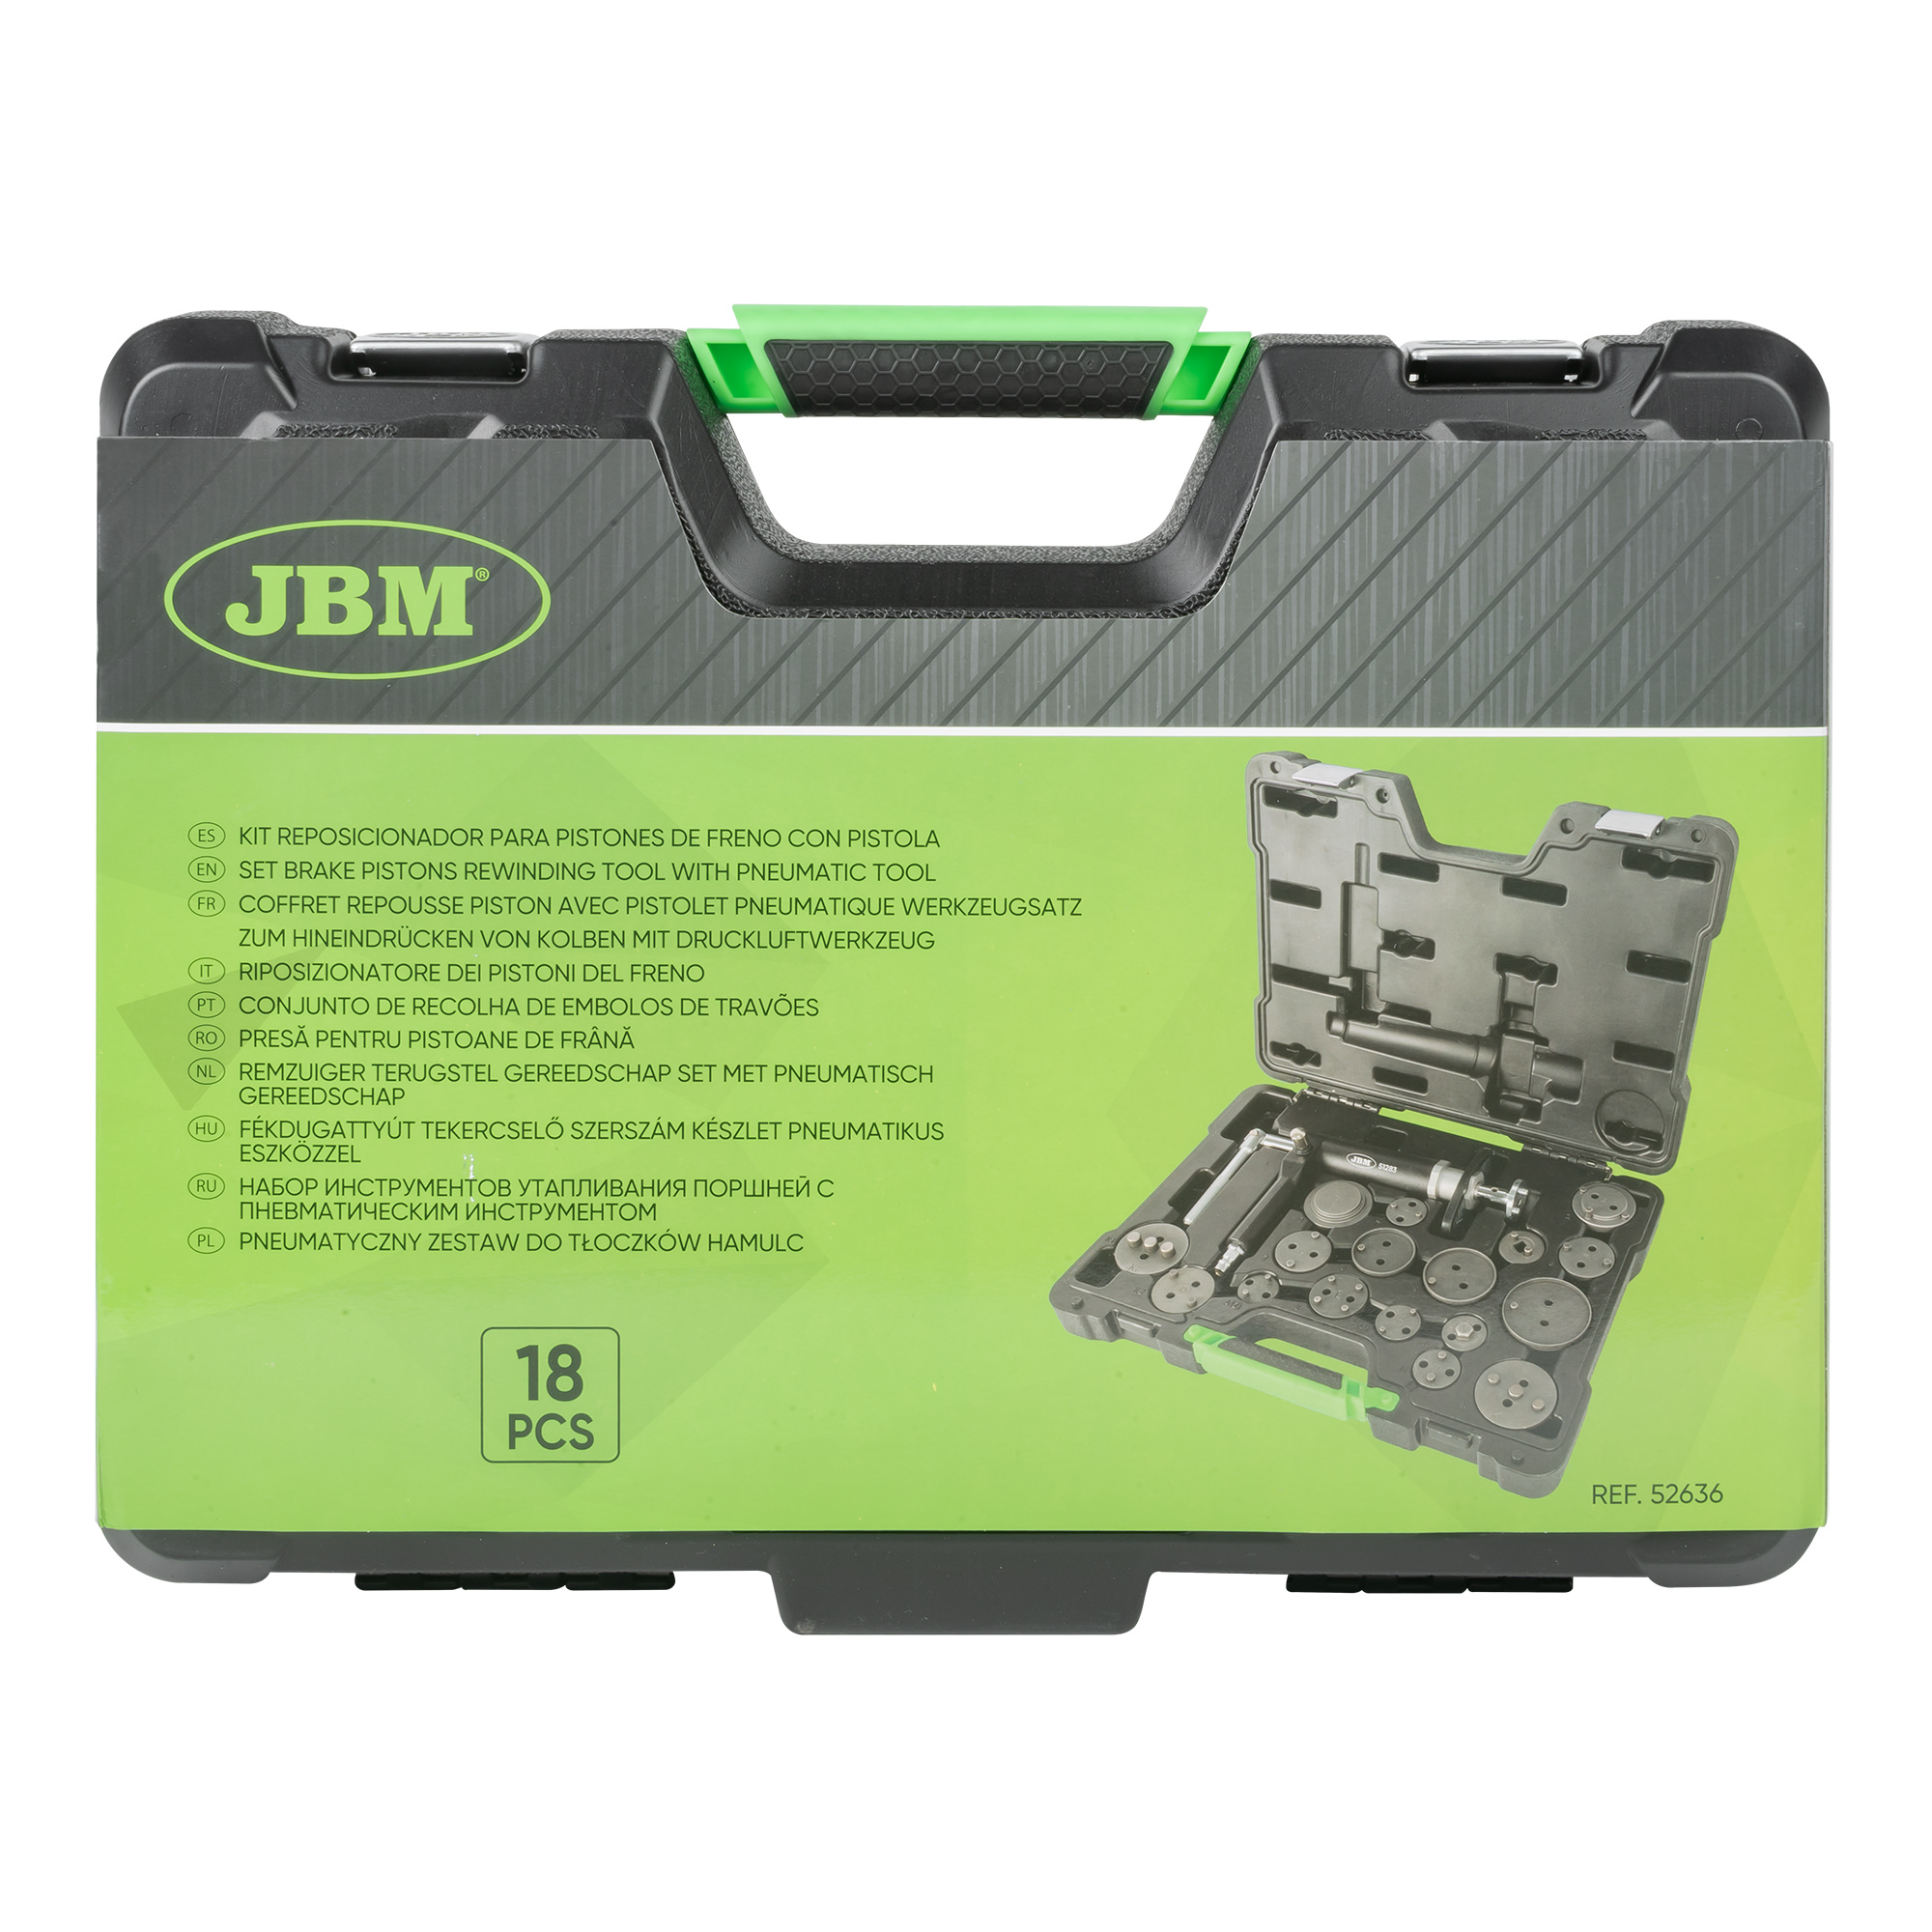 JBM Kit reposicionador pistones de freno con pistola 16 pcs 